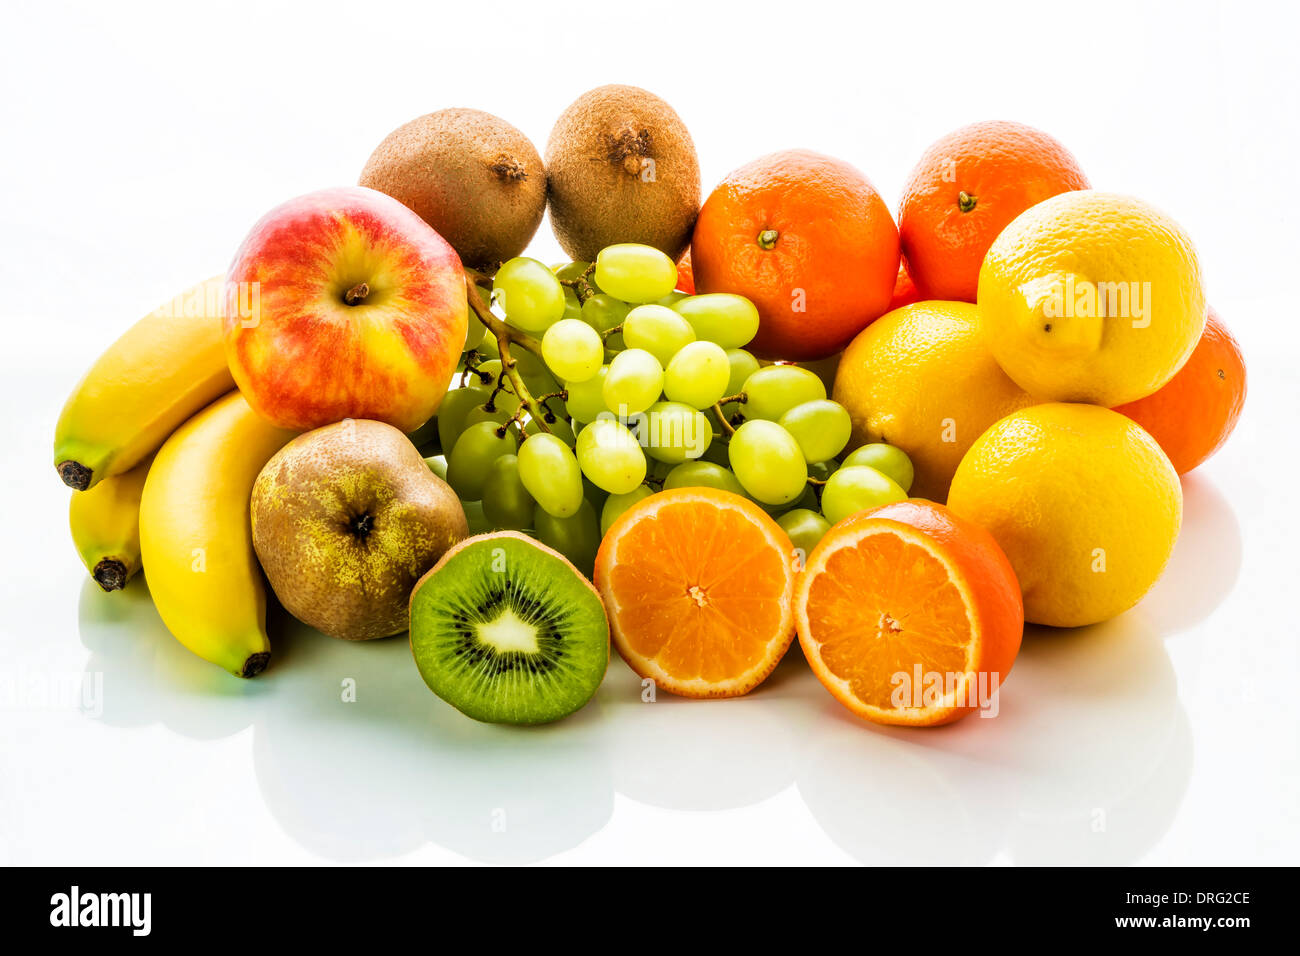 Immagine di frutta con un apple, mandarino, banane, calce, uva da tavola, kiwi e pera su sfondo bianco Foto Stock